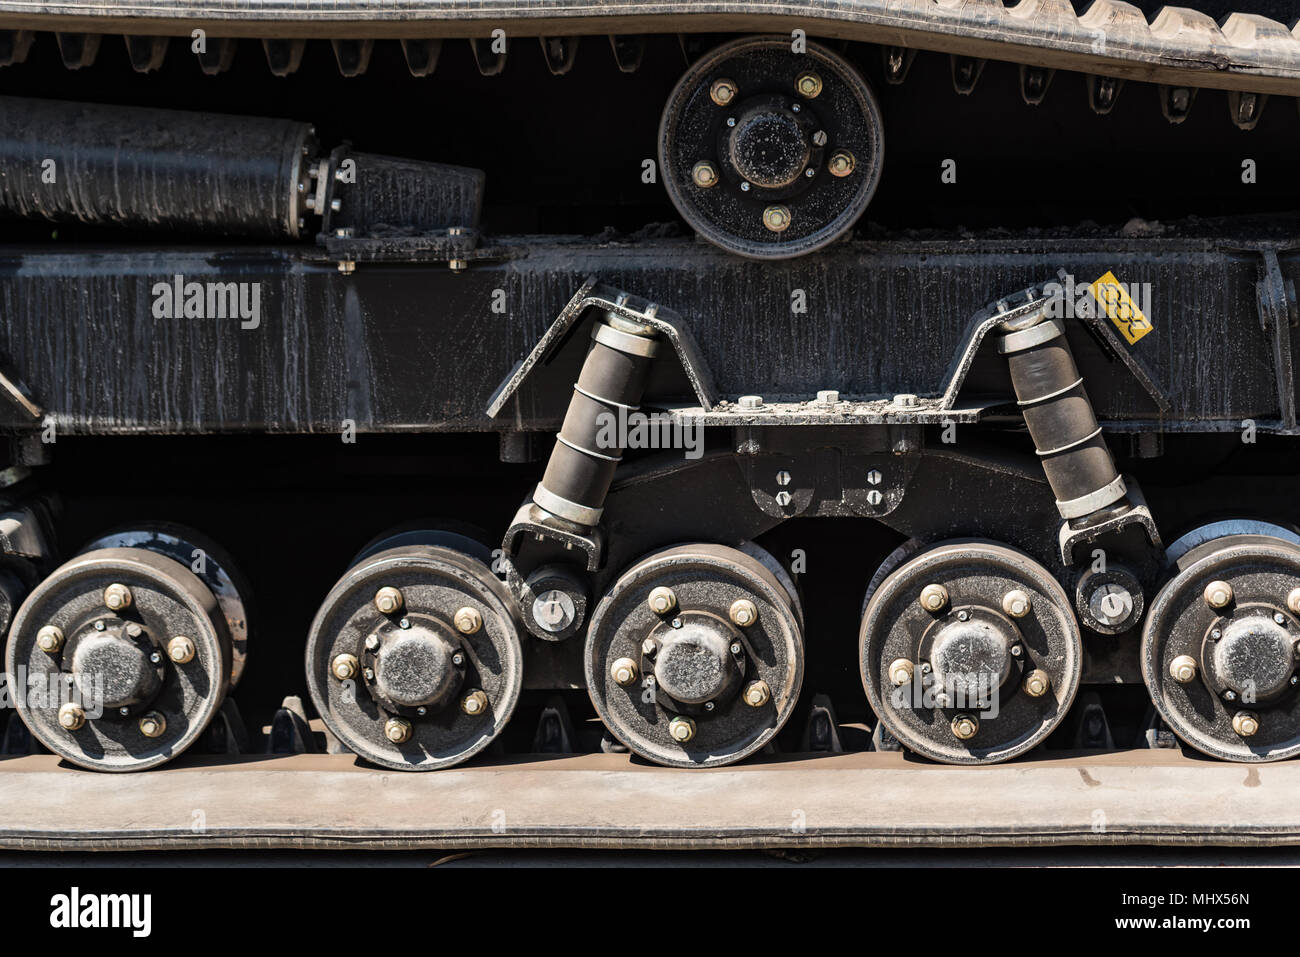 Un close-up immagine del trattore di gomma del battistrada cingolato Foto Stock